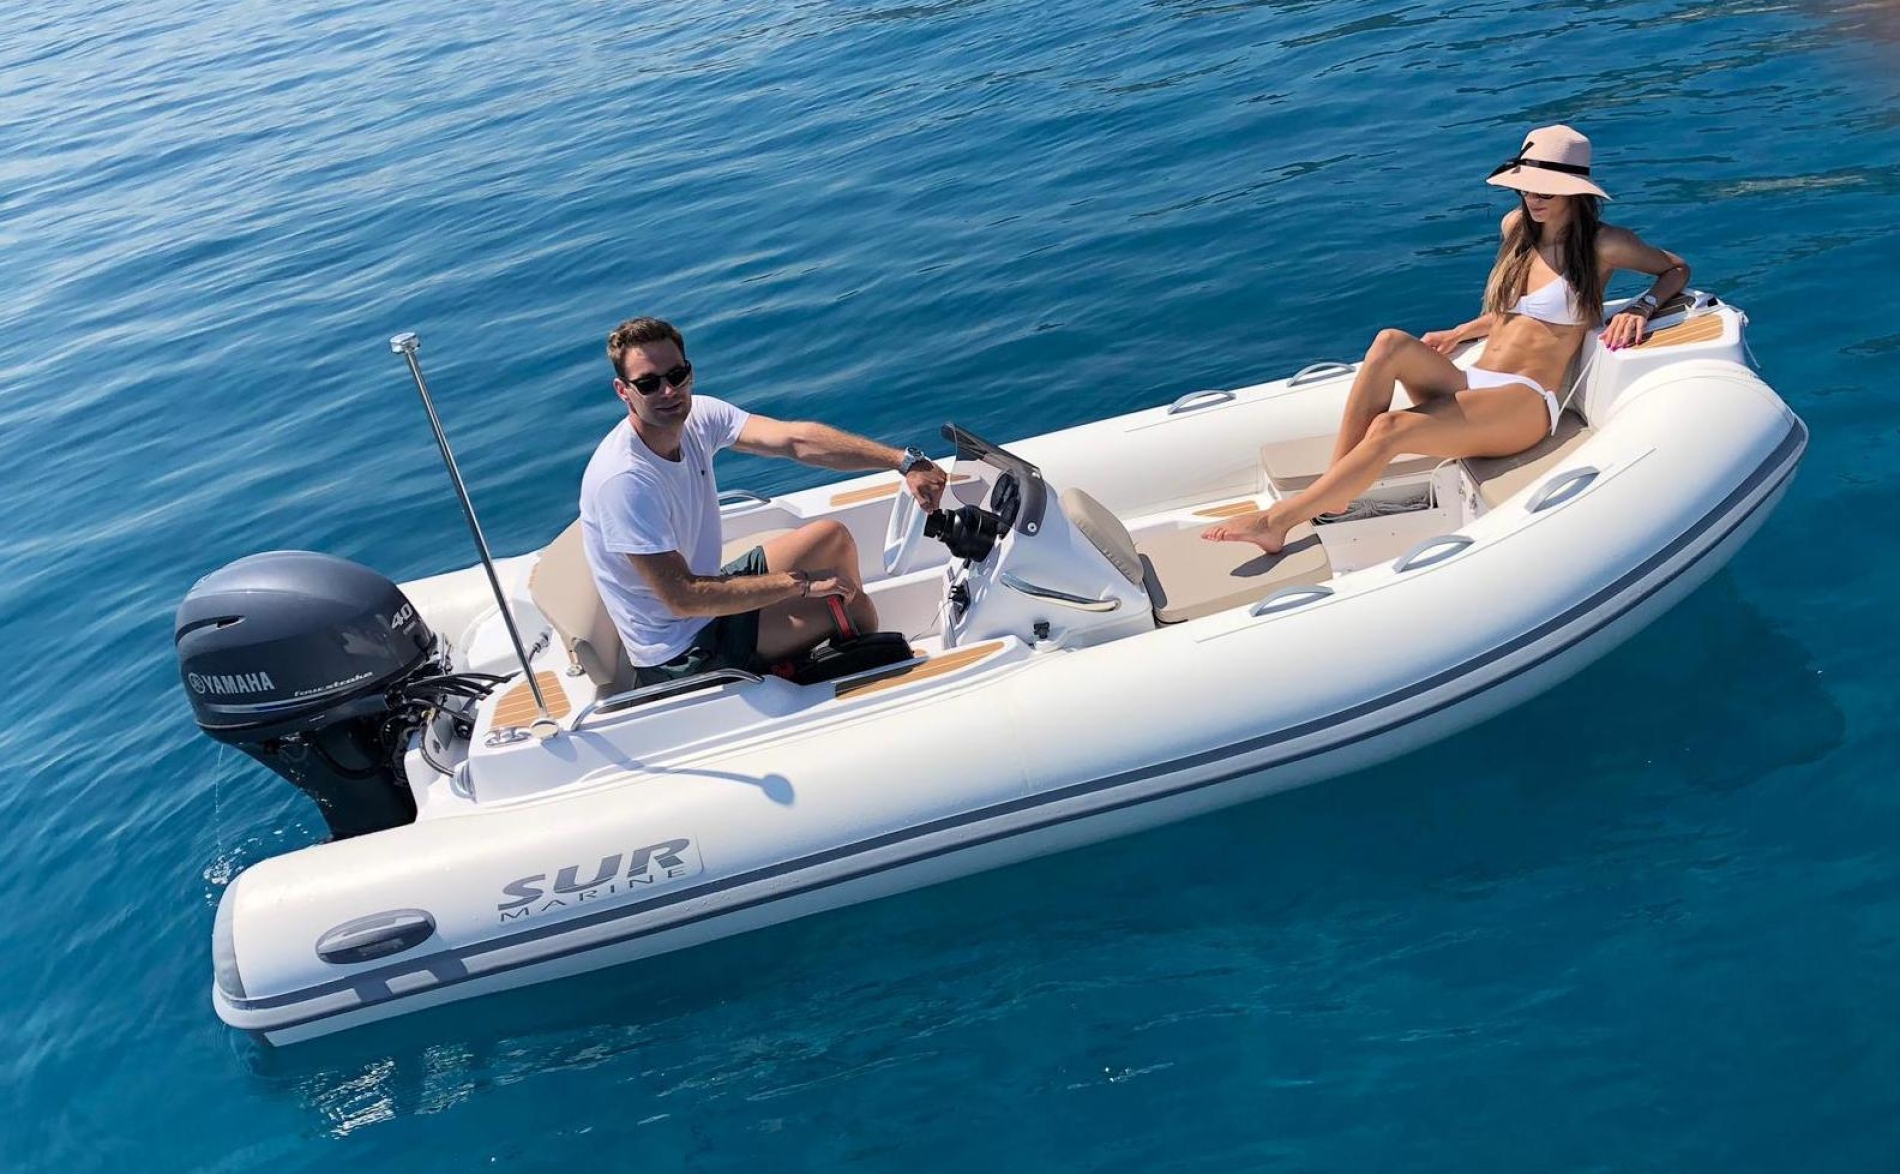 Surmarine Luxury Tender ST400 by navi4you